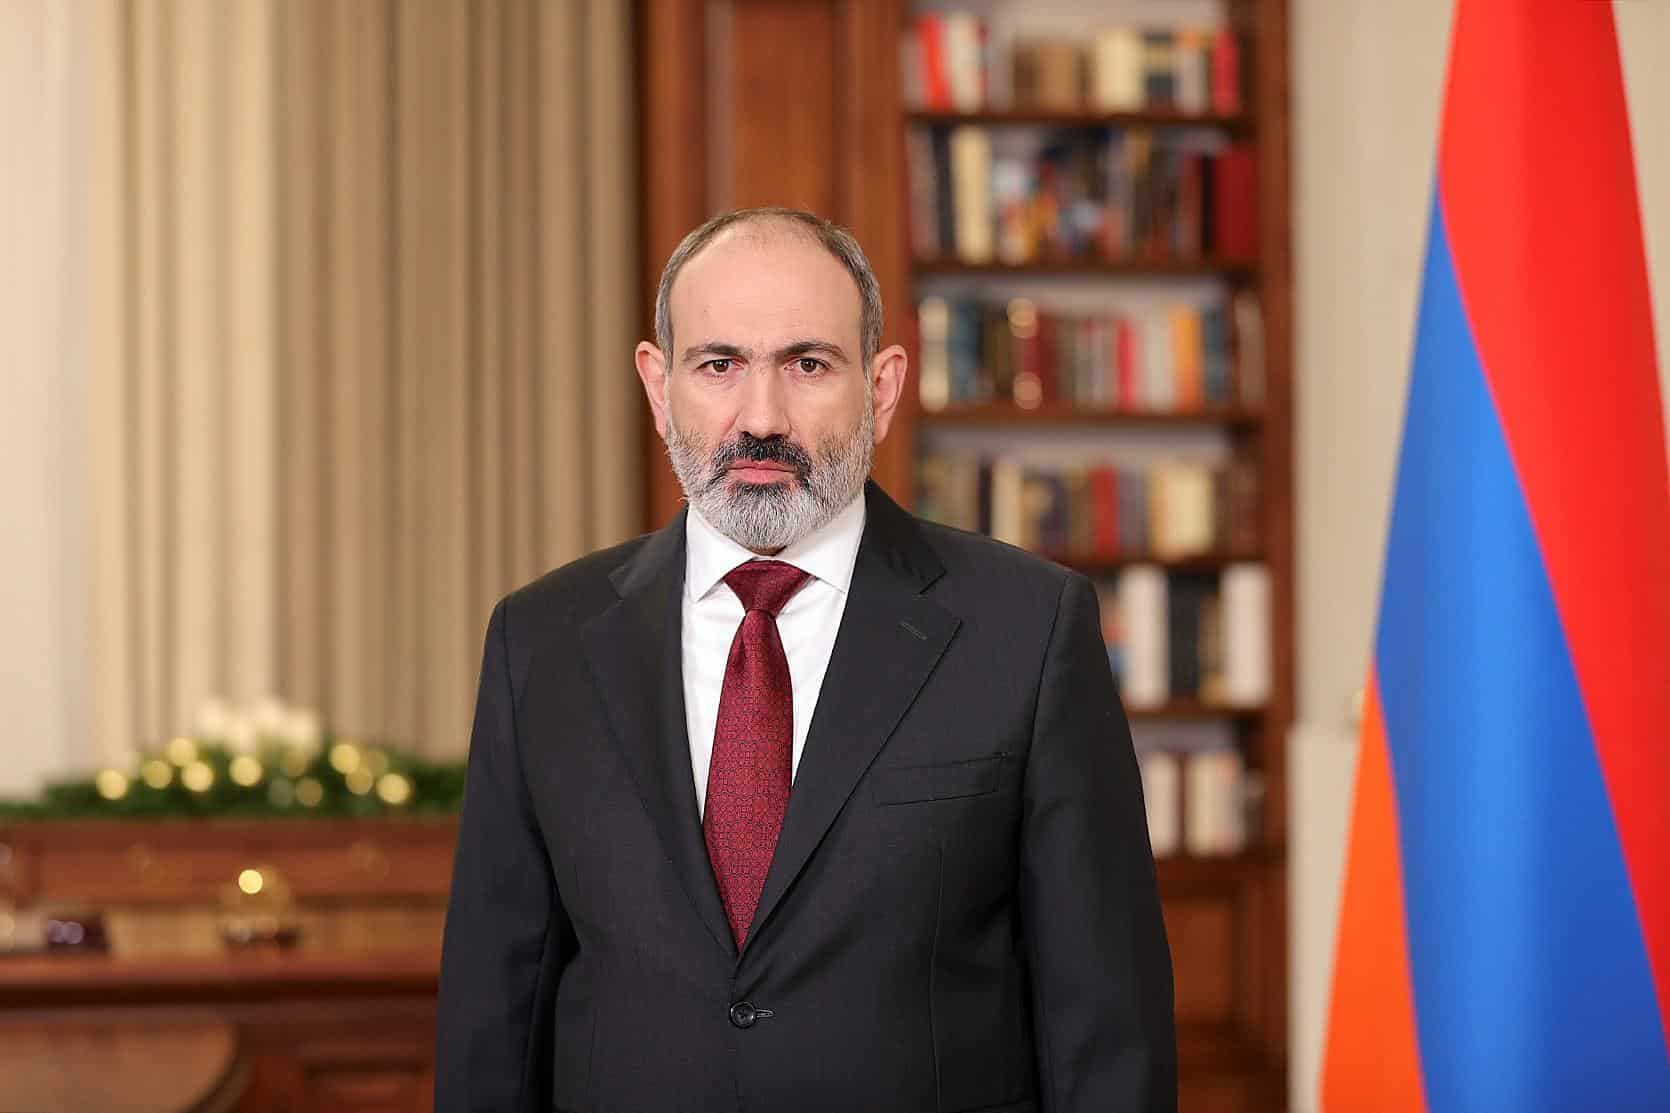 Հայաստանը երախտապարտ է Ճապոնիային անցած 30 տարիներին ցուցաբերած աջակցության համար․ վարչապետ